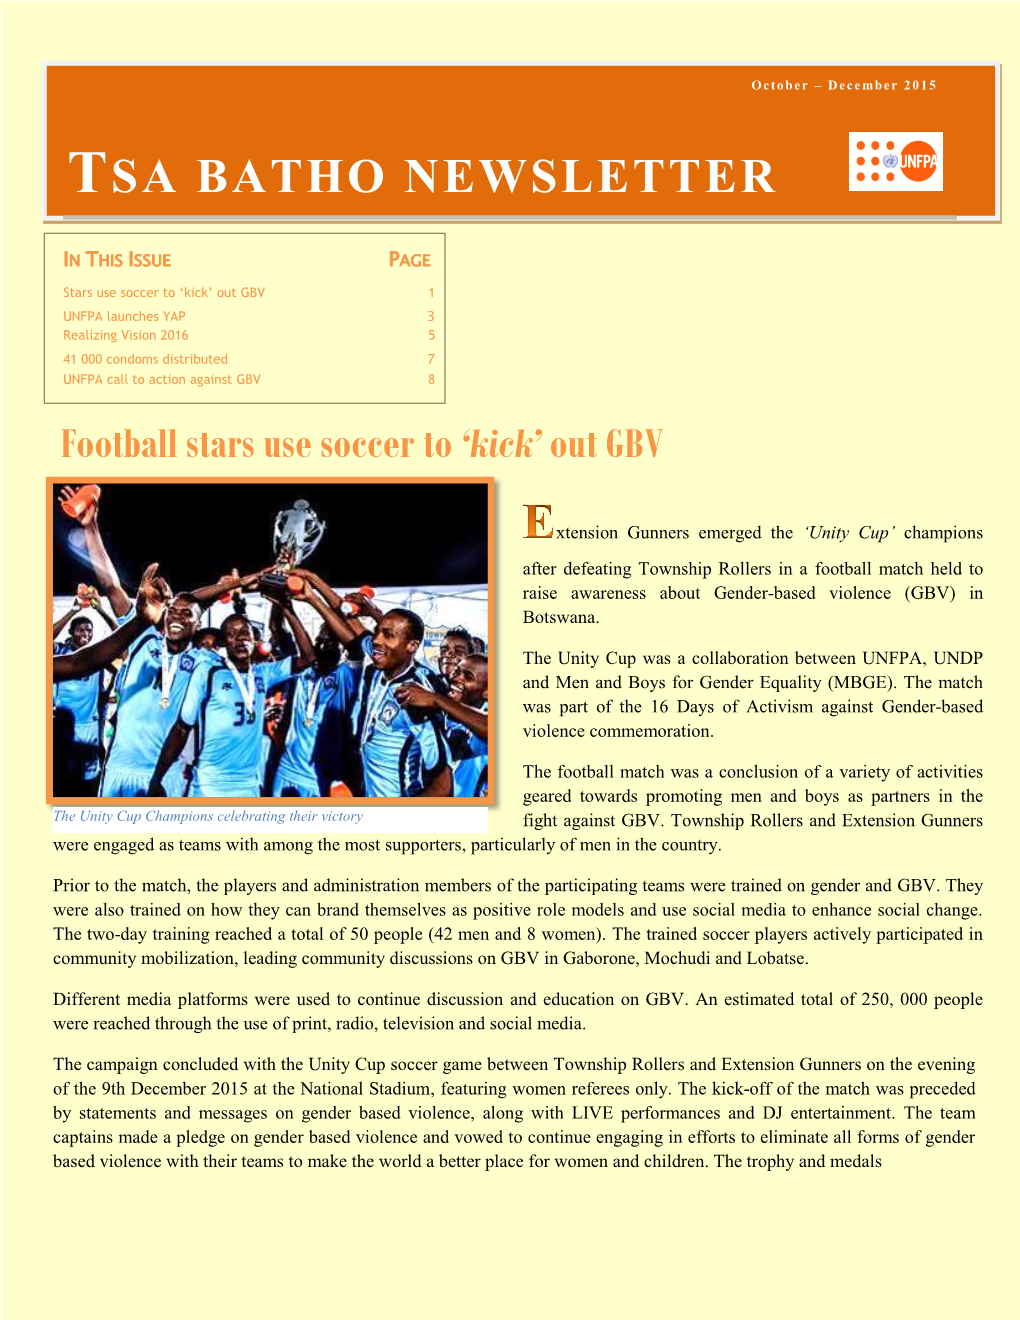 Tsa Batho Newsletter